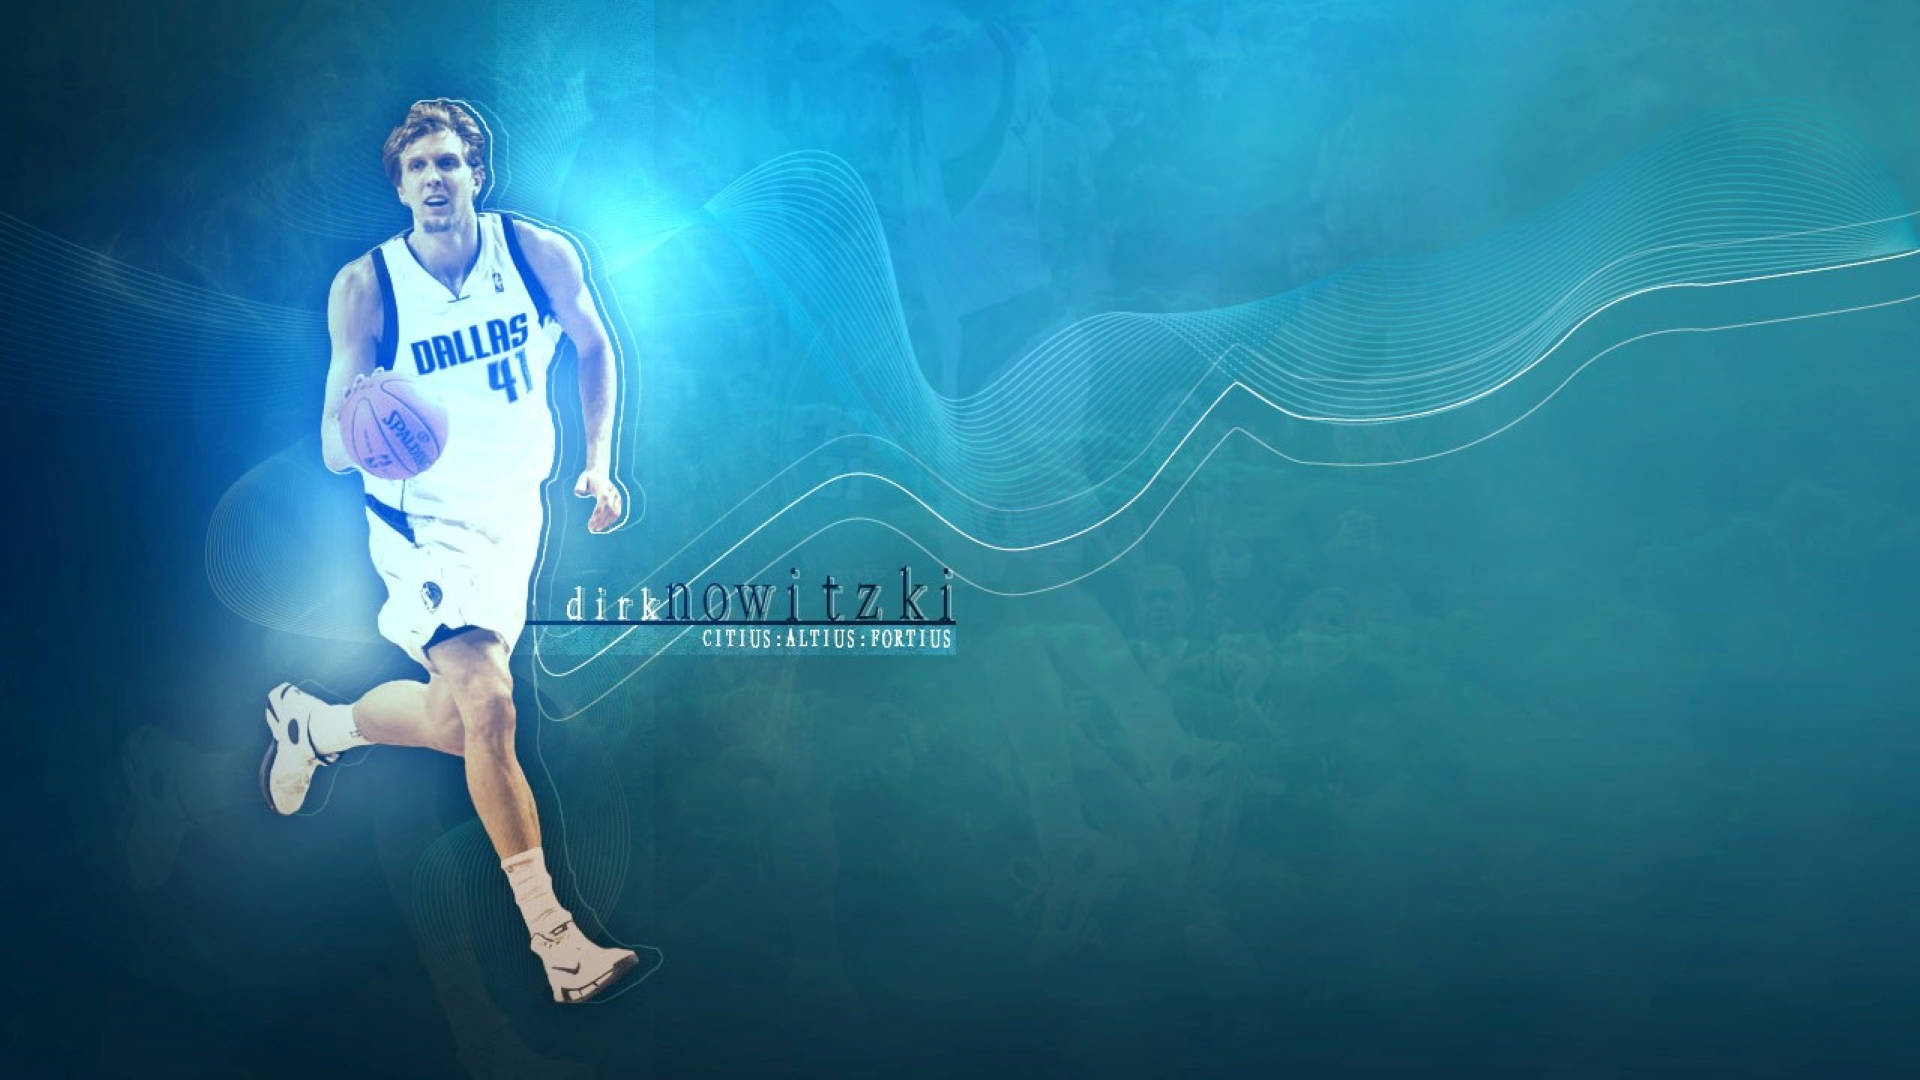 Dirk Nowitzki Blue Fan Art Background